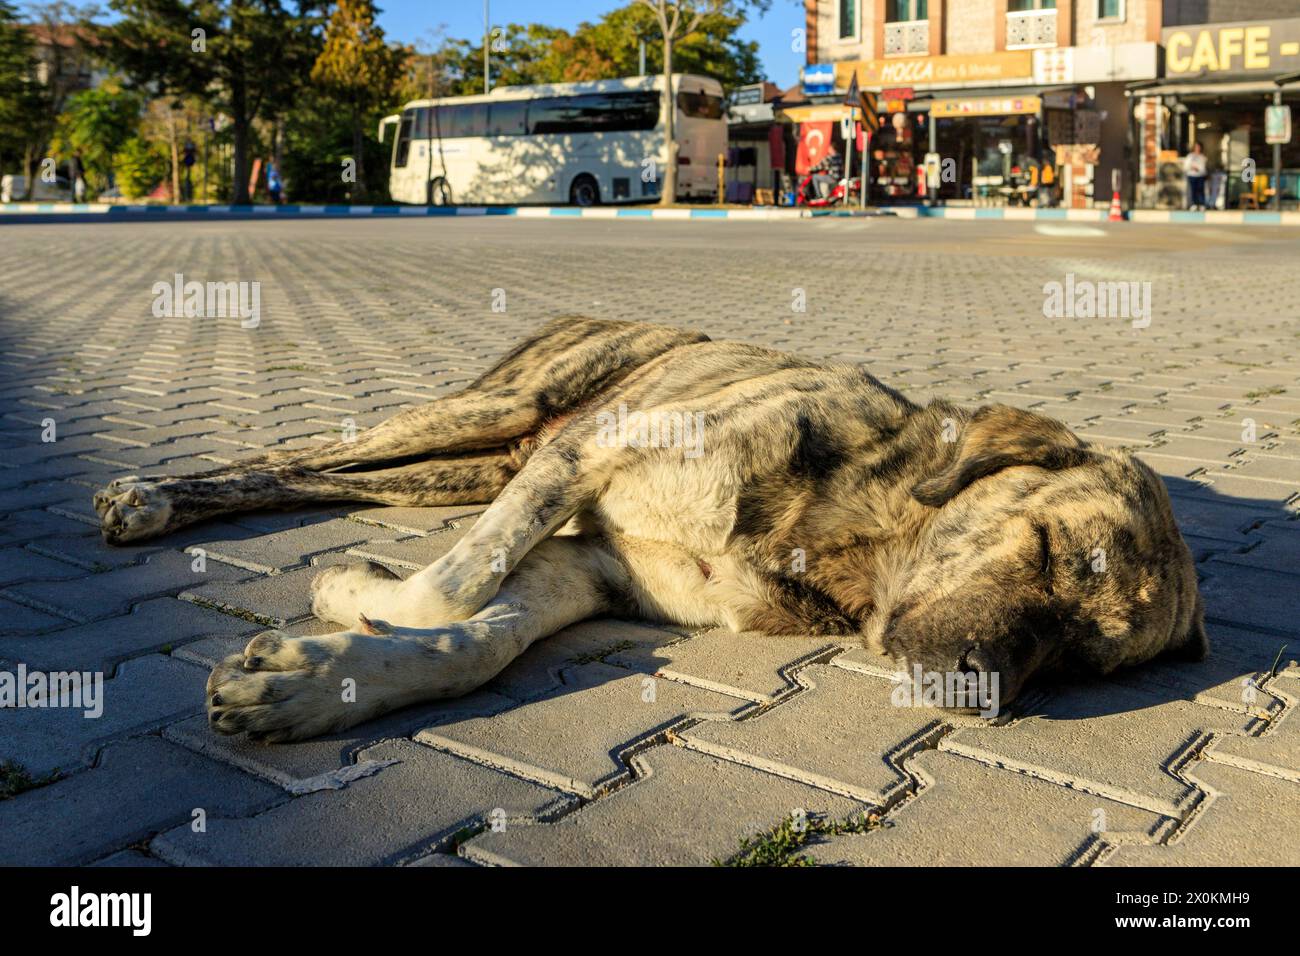 Sleeping dog, Konya, Turkey. Stock Photo